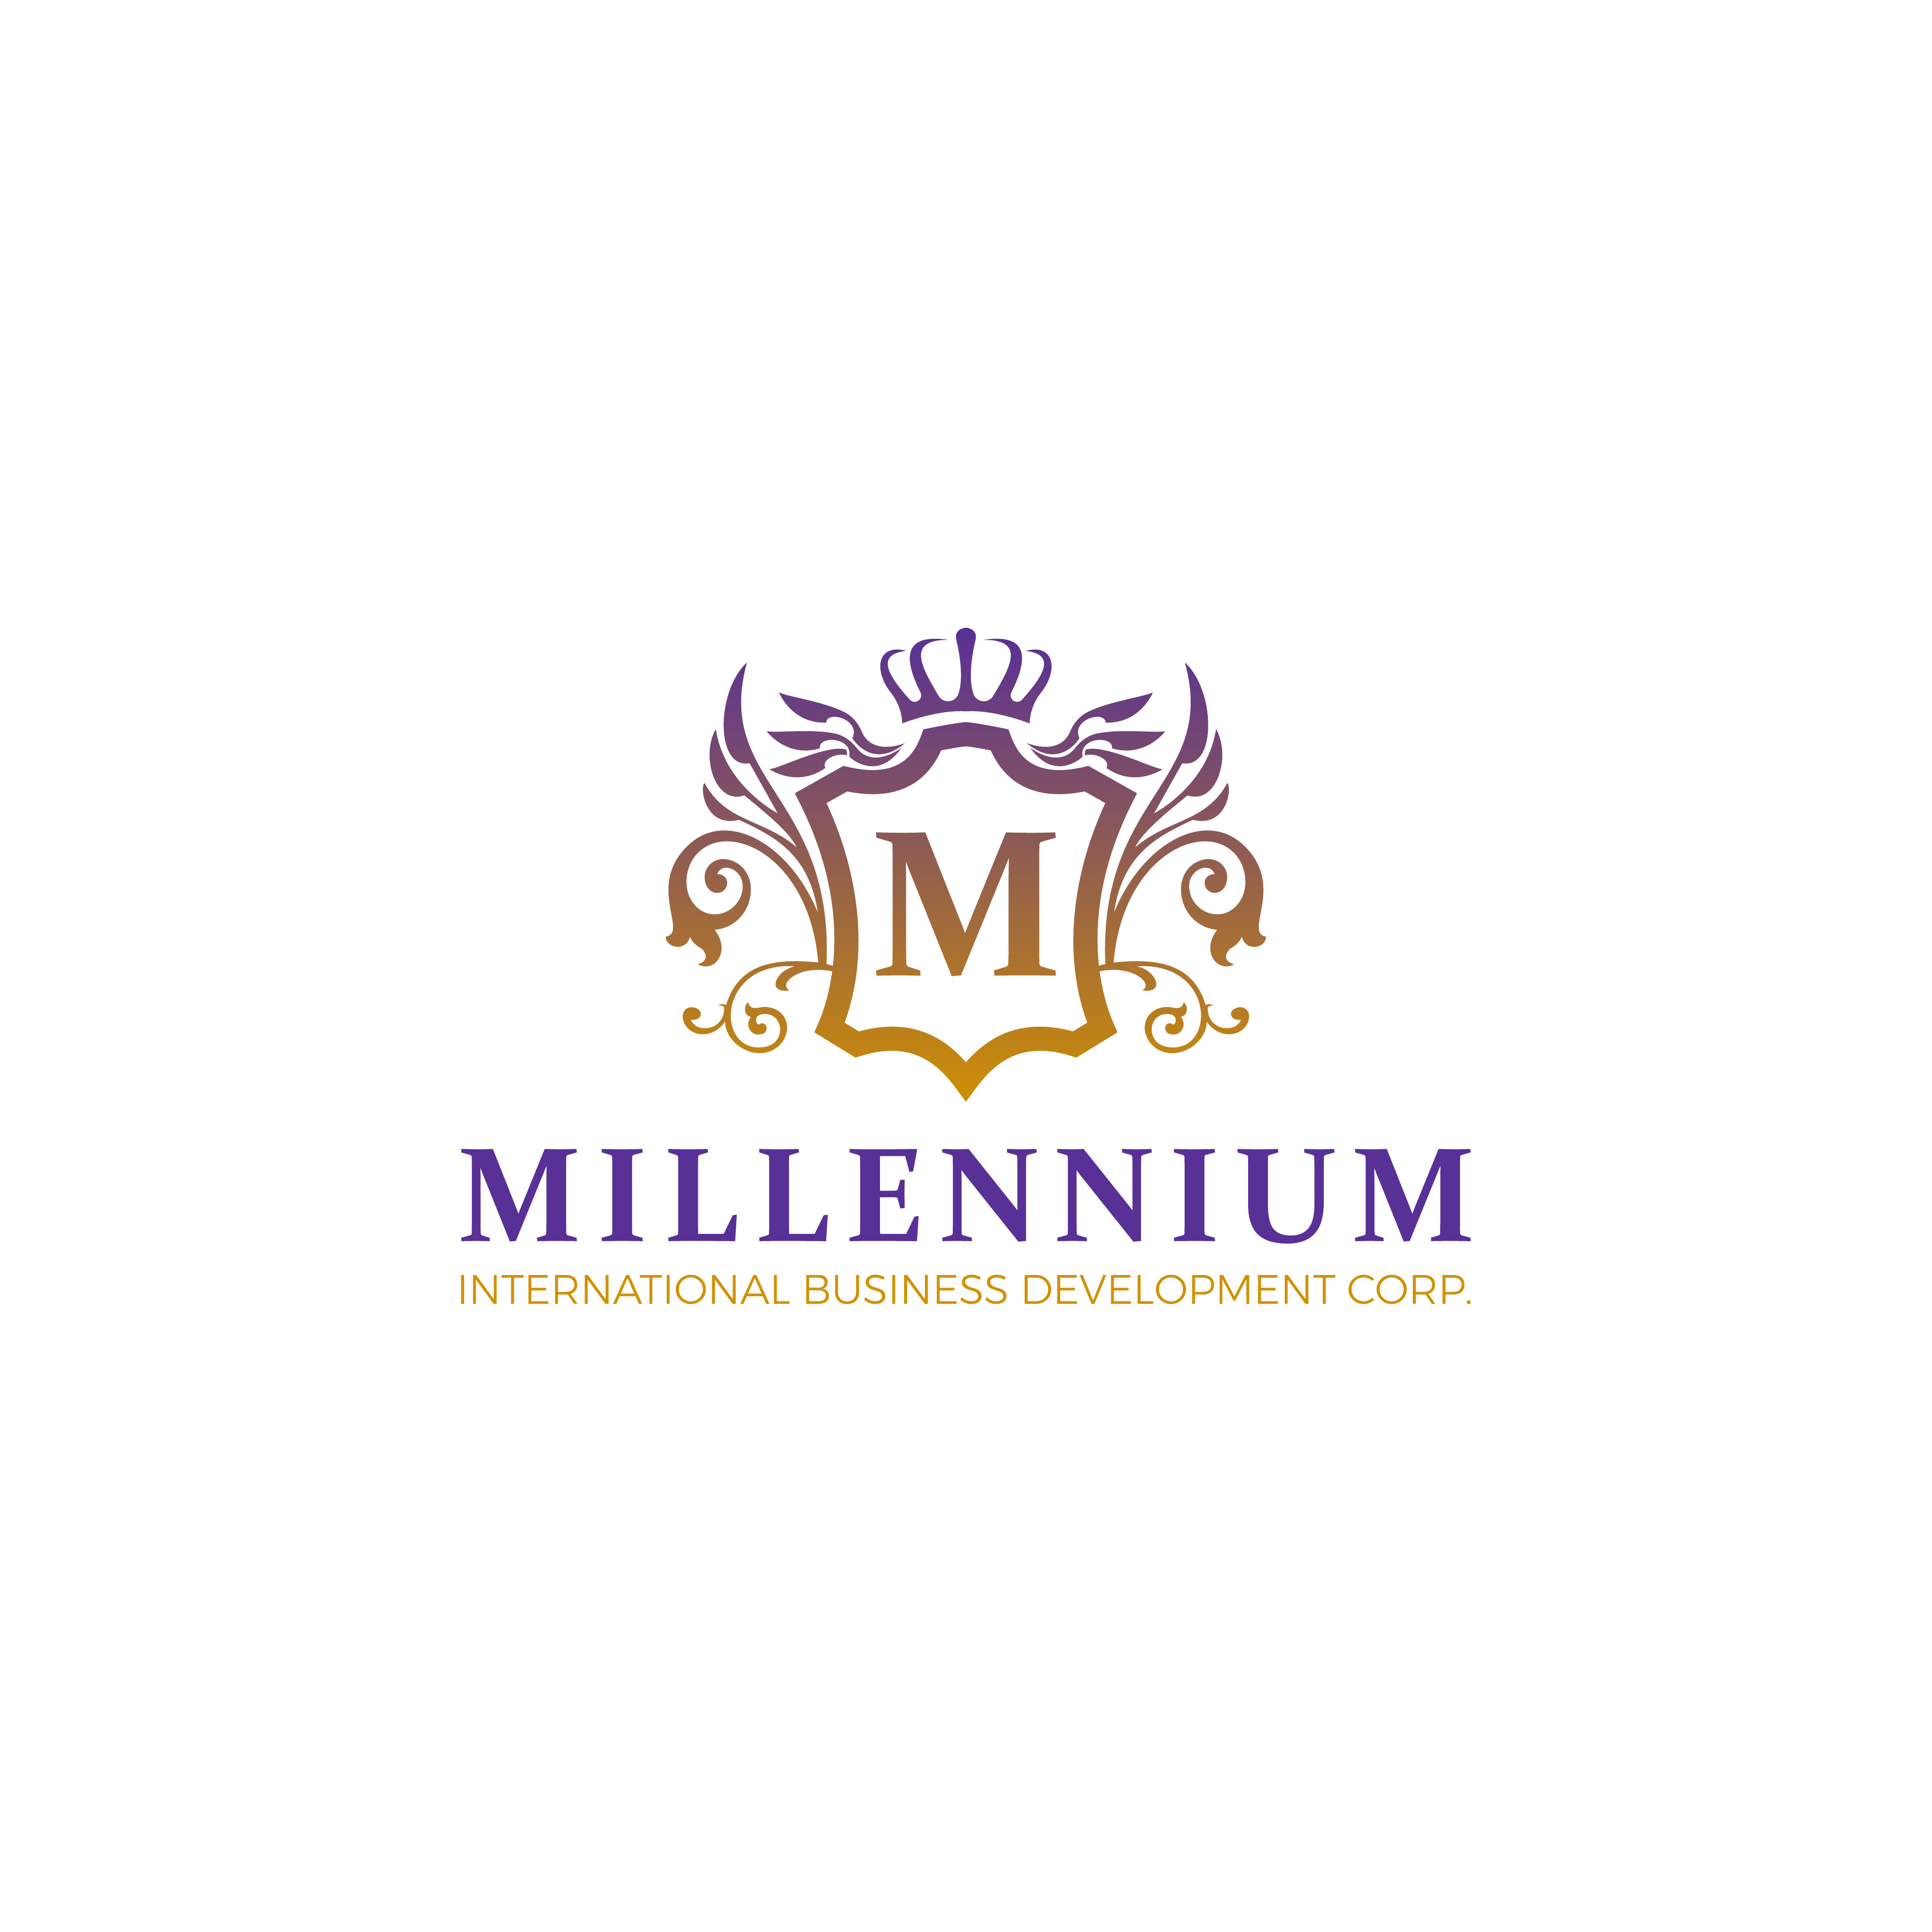 Millennium International Business Development Corp™